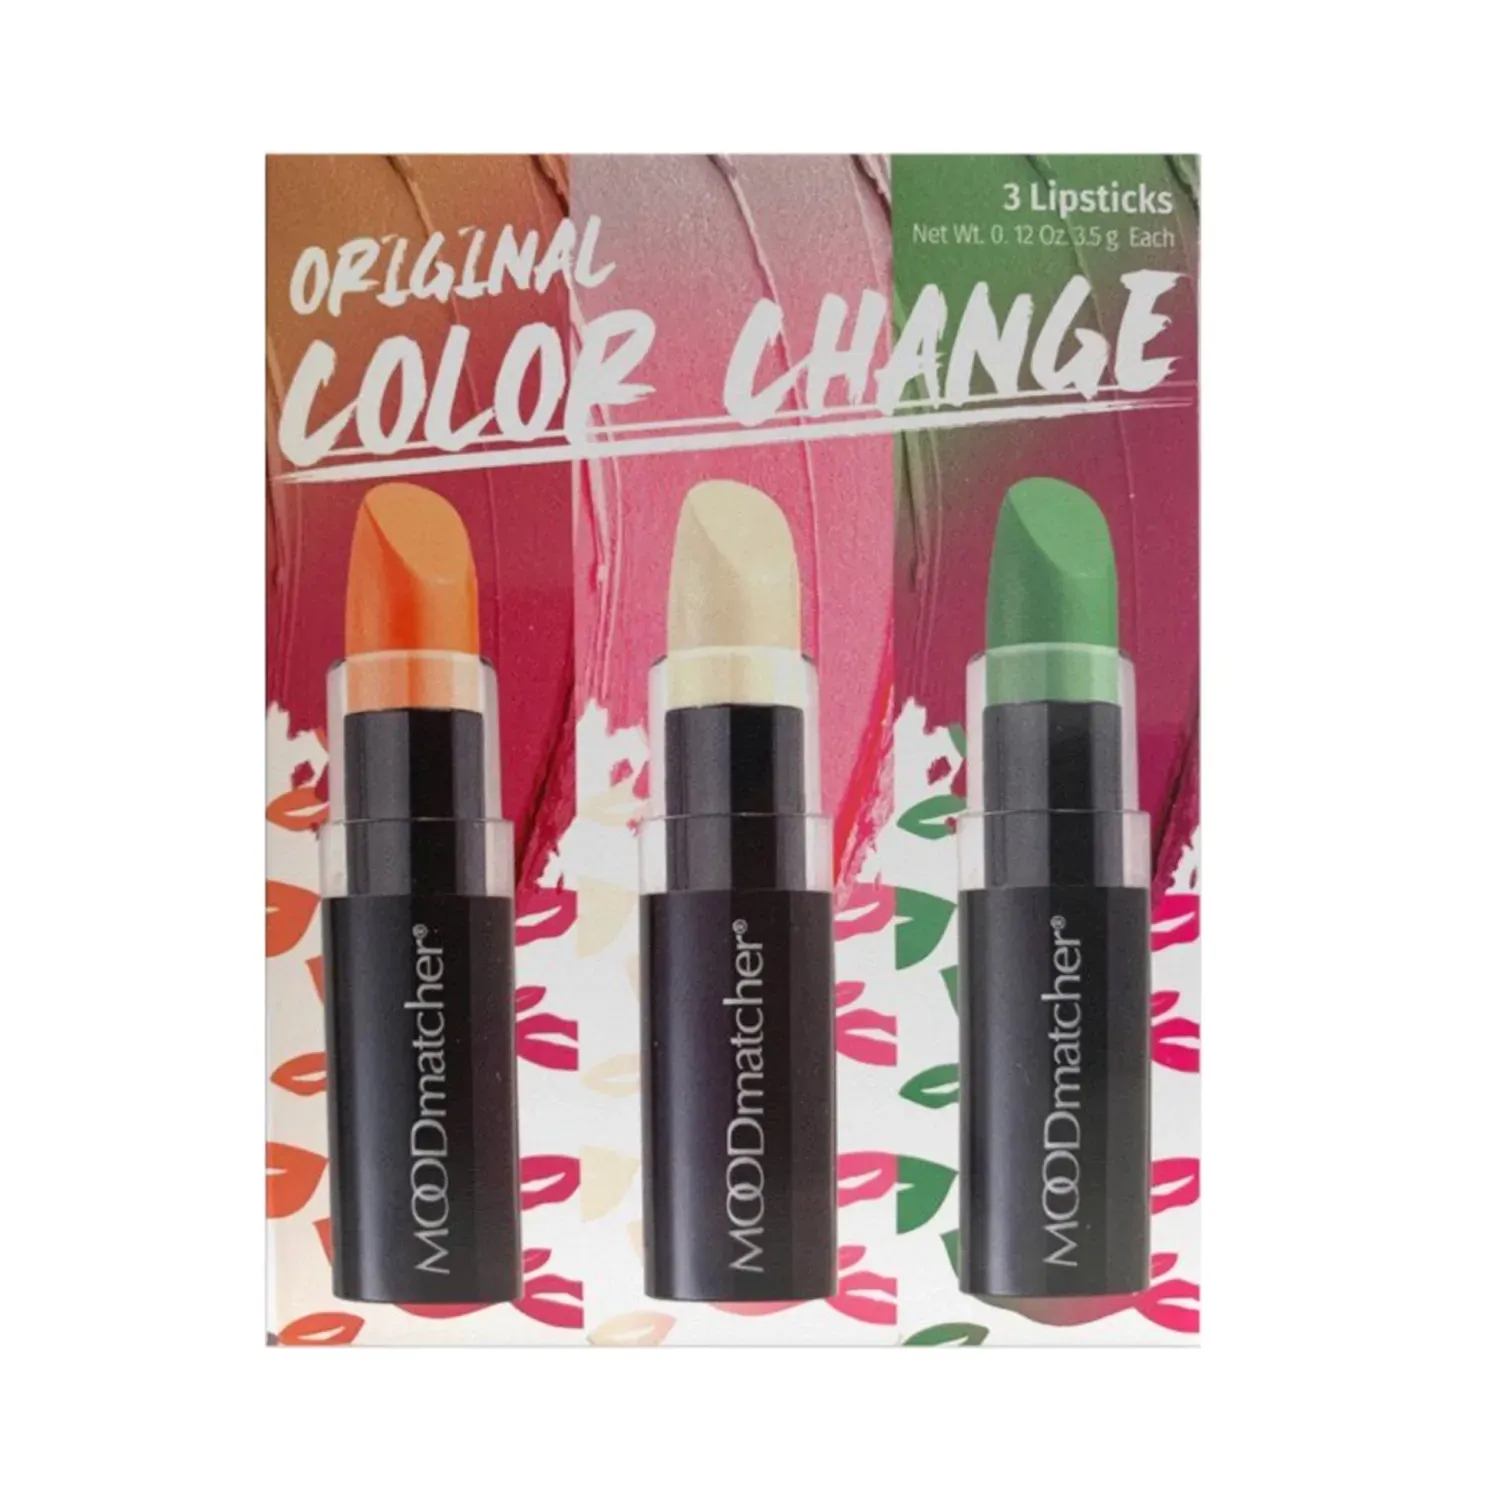 Fran Wilson Moodmatcher | Fran Wilson Moodmatcher Classic Color Change Lipstick Classic Set - (6Pcs)